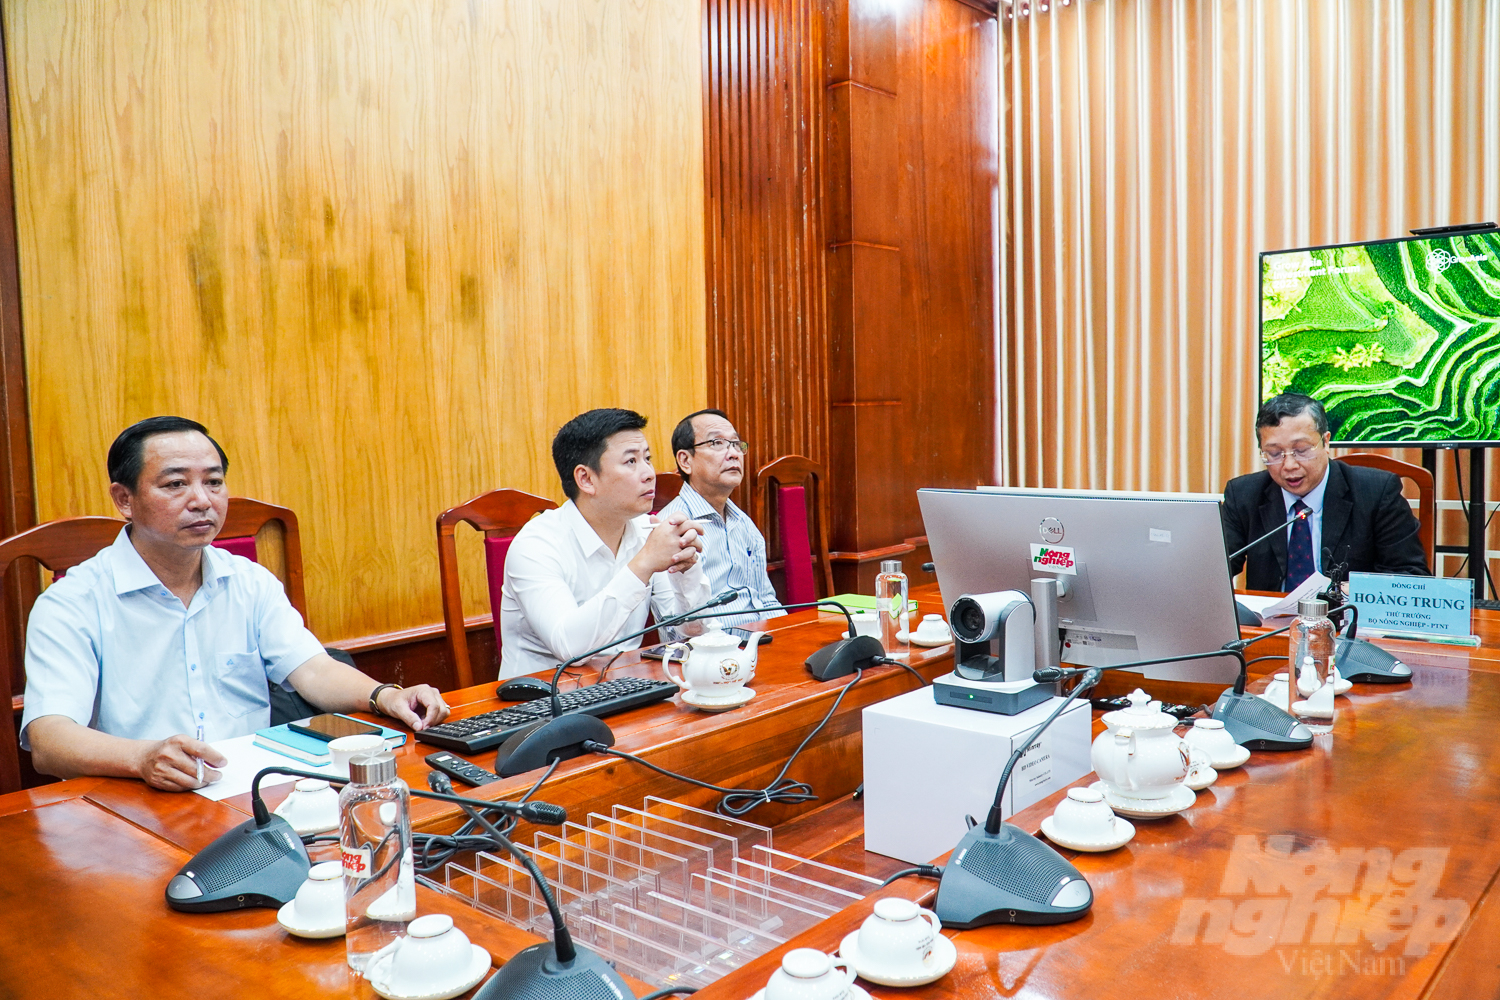 Thứ trưởng Bộ NN-PTNT Hoàng Trung chủ trì khai mạc Hội thảo đa bên về hỗ trợ nhóm công tác ngành hàng lúa gạo Việt Nam trong nỗ lực giảm phát thải. Ảnh: Kim Anh.